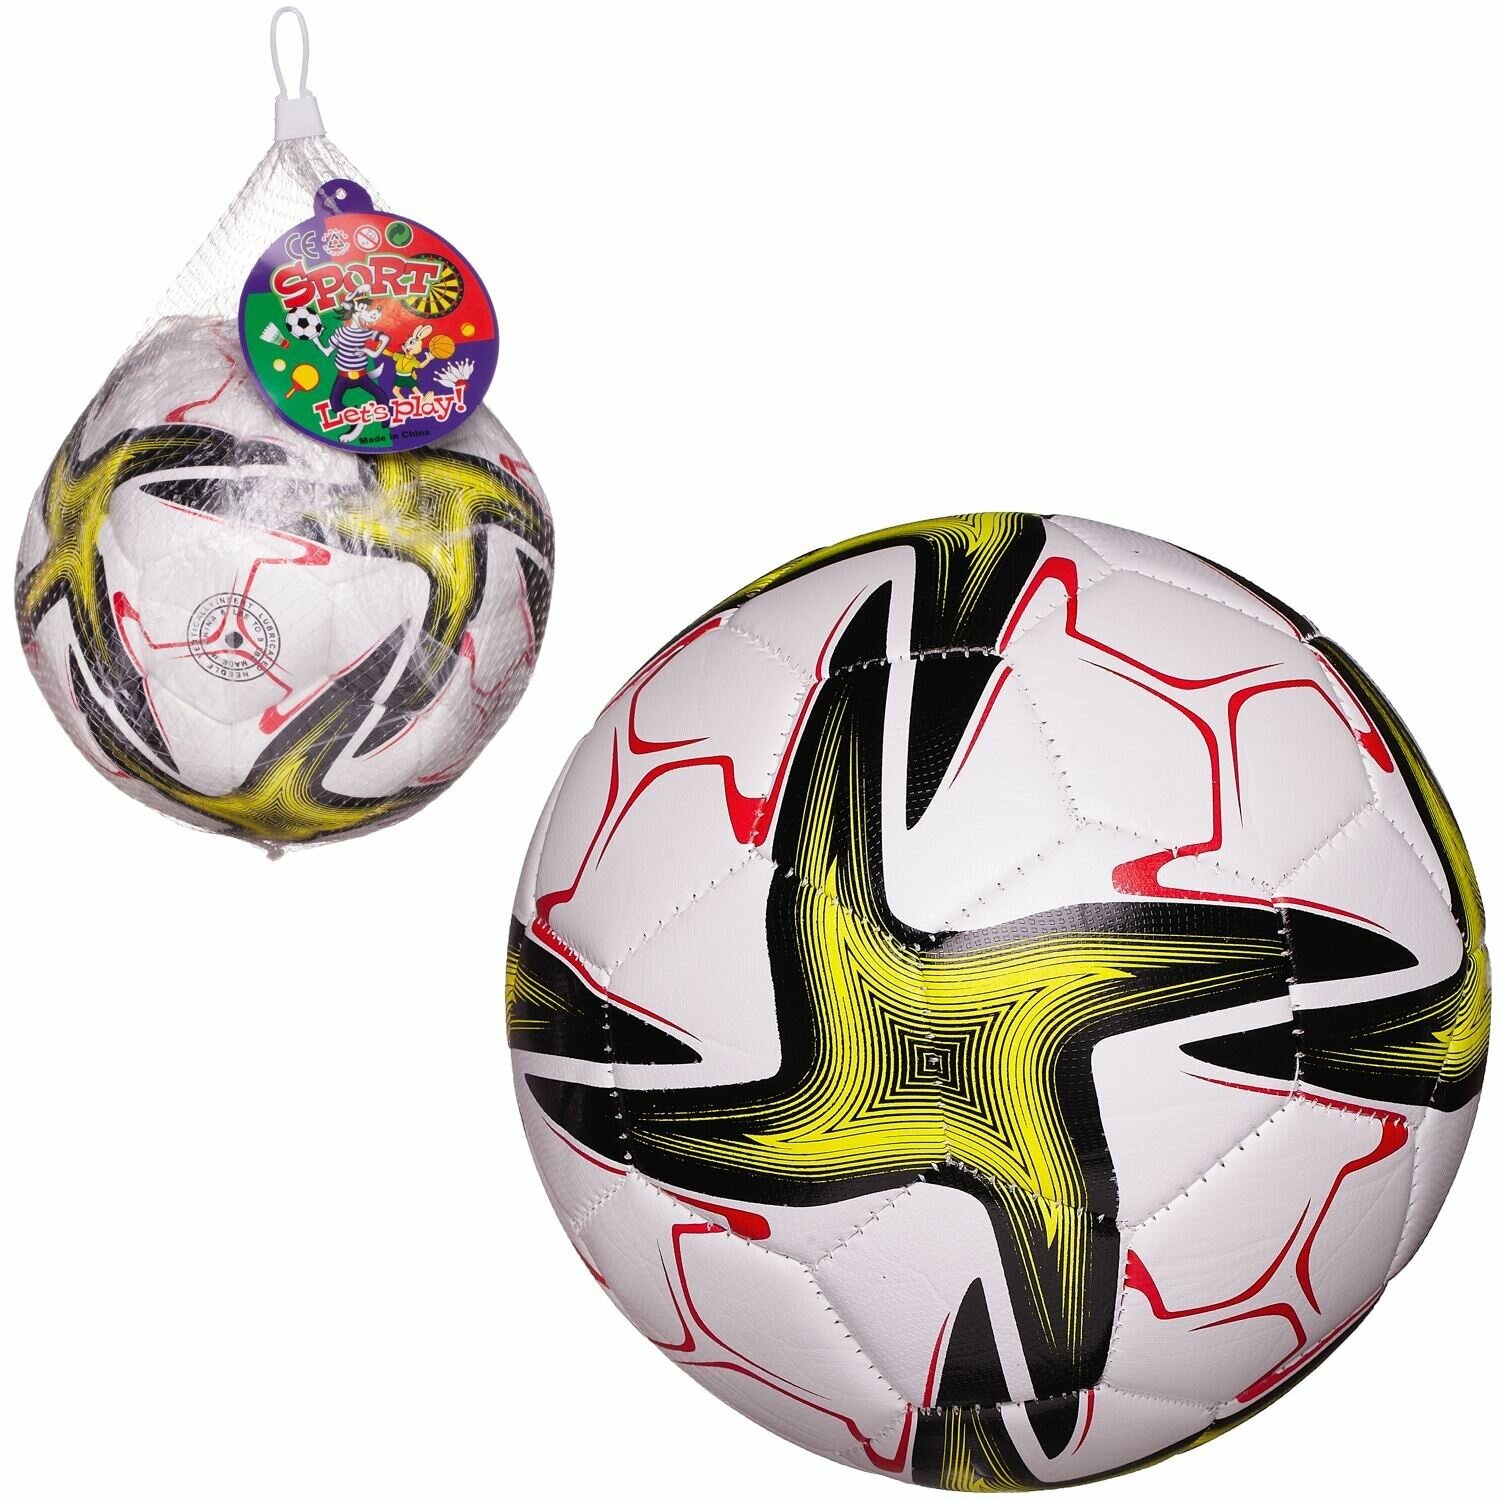 Футбольный мяч Junfa белый с желто-черными звездами 22-23 см L756/желто-черные